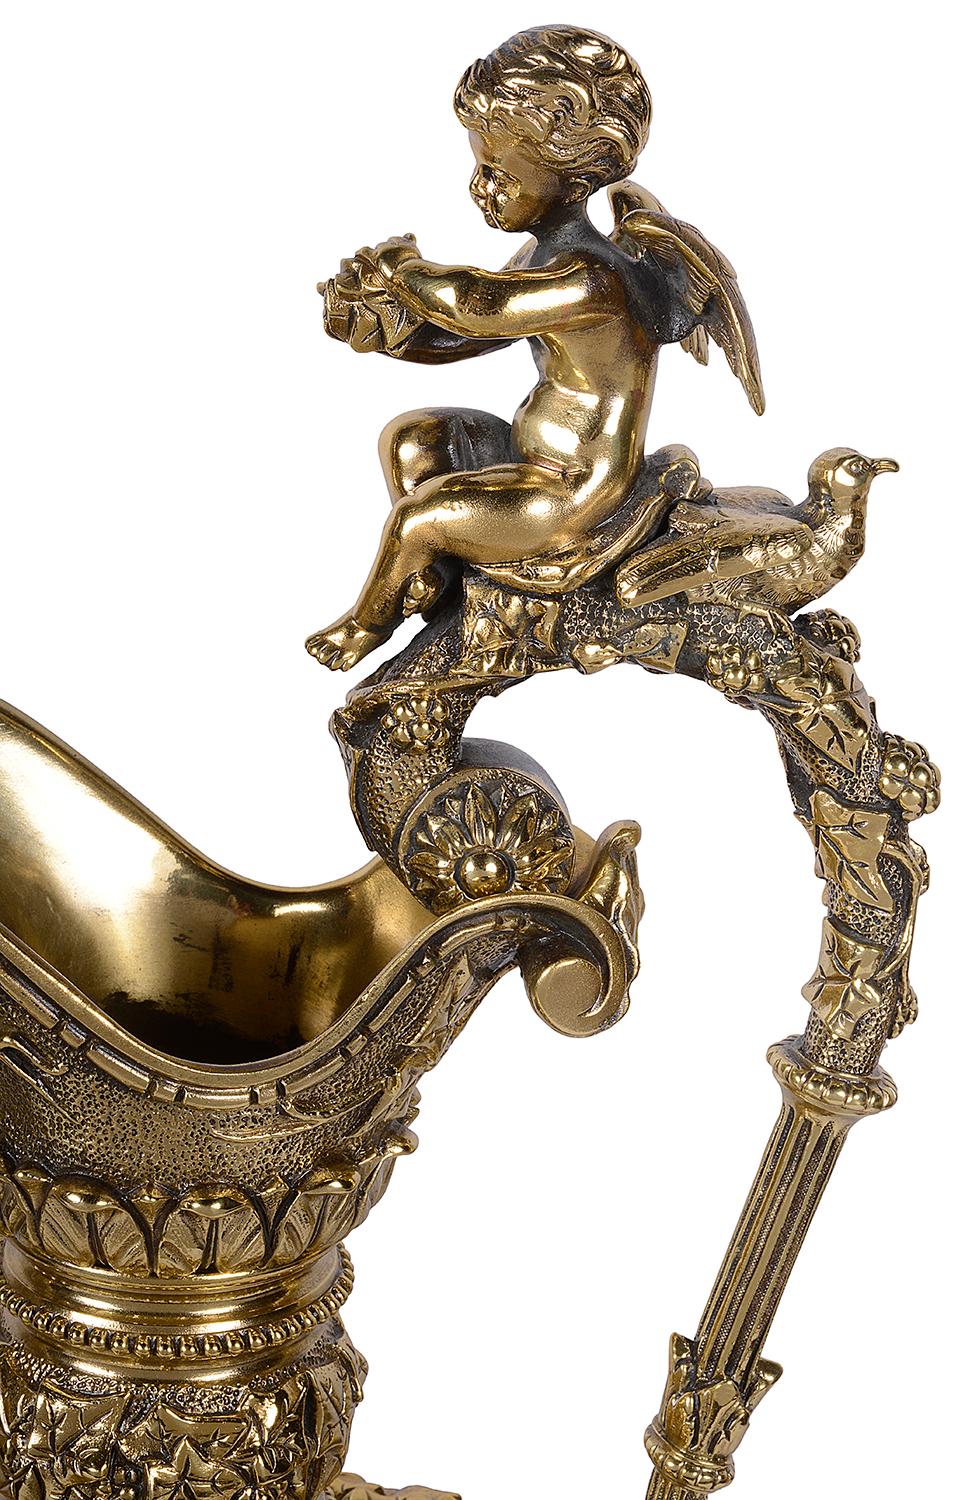 Ein Paar antiker französischer patinierter Bronzewerke im Renaissancestil stellt spielende bacchantische Putten dar. Auf dem Griff sitzt ein Putto, der einen Gegenstand in den Händen hält. Die Musiker sind Putten mit Hörnern und Trommeln, zwei